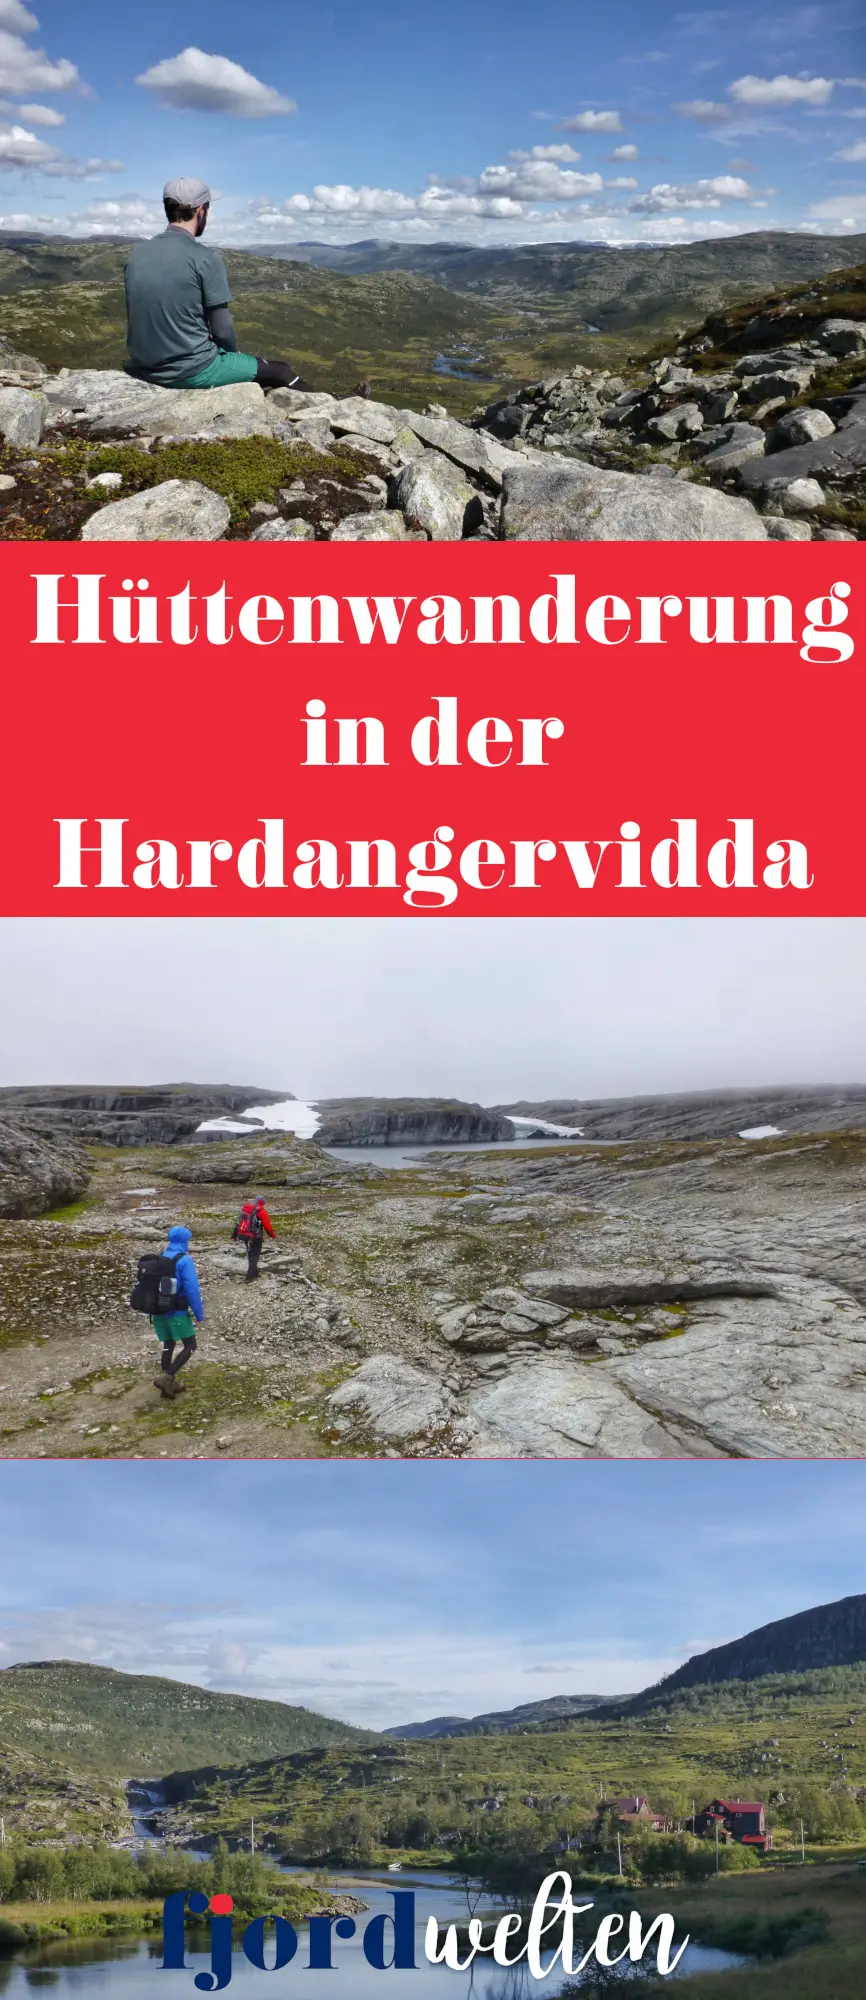 5 Tage Hüttenwanderung in der Hardangervidda